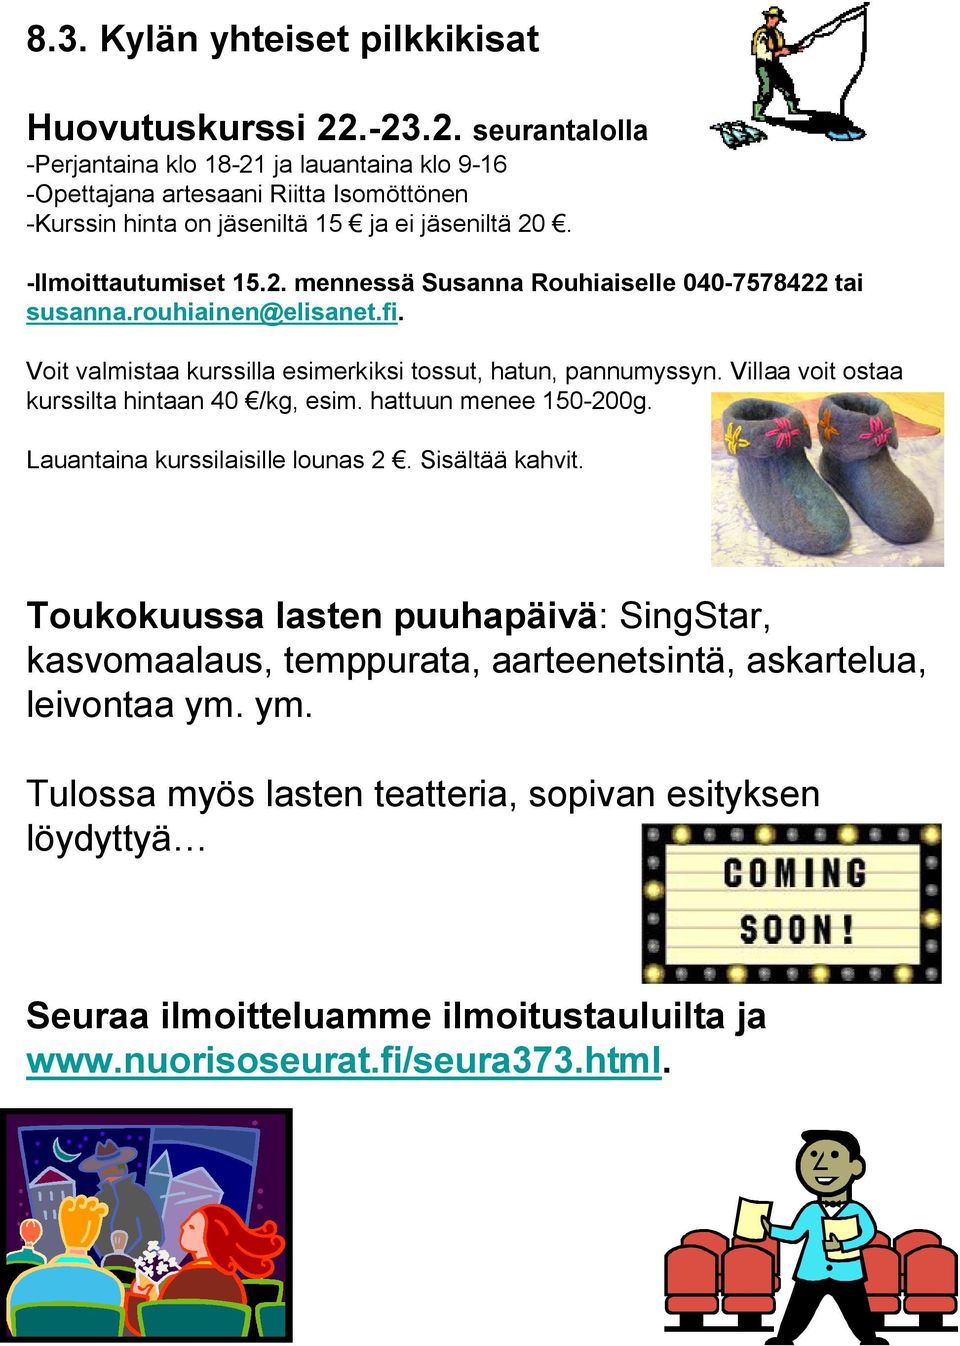 rouhiainen@elisanet.fi. Voit valmistaa kurssilla esimerkiksi tossut, hatun, pannumyssyn. Villaa voit ostaa kurssilta hintaan 40 /kg, esim. hattuun menee 150-200g.